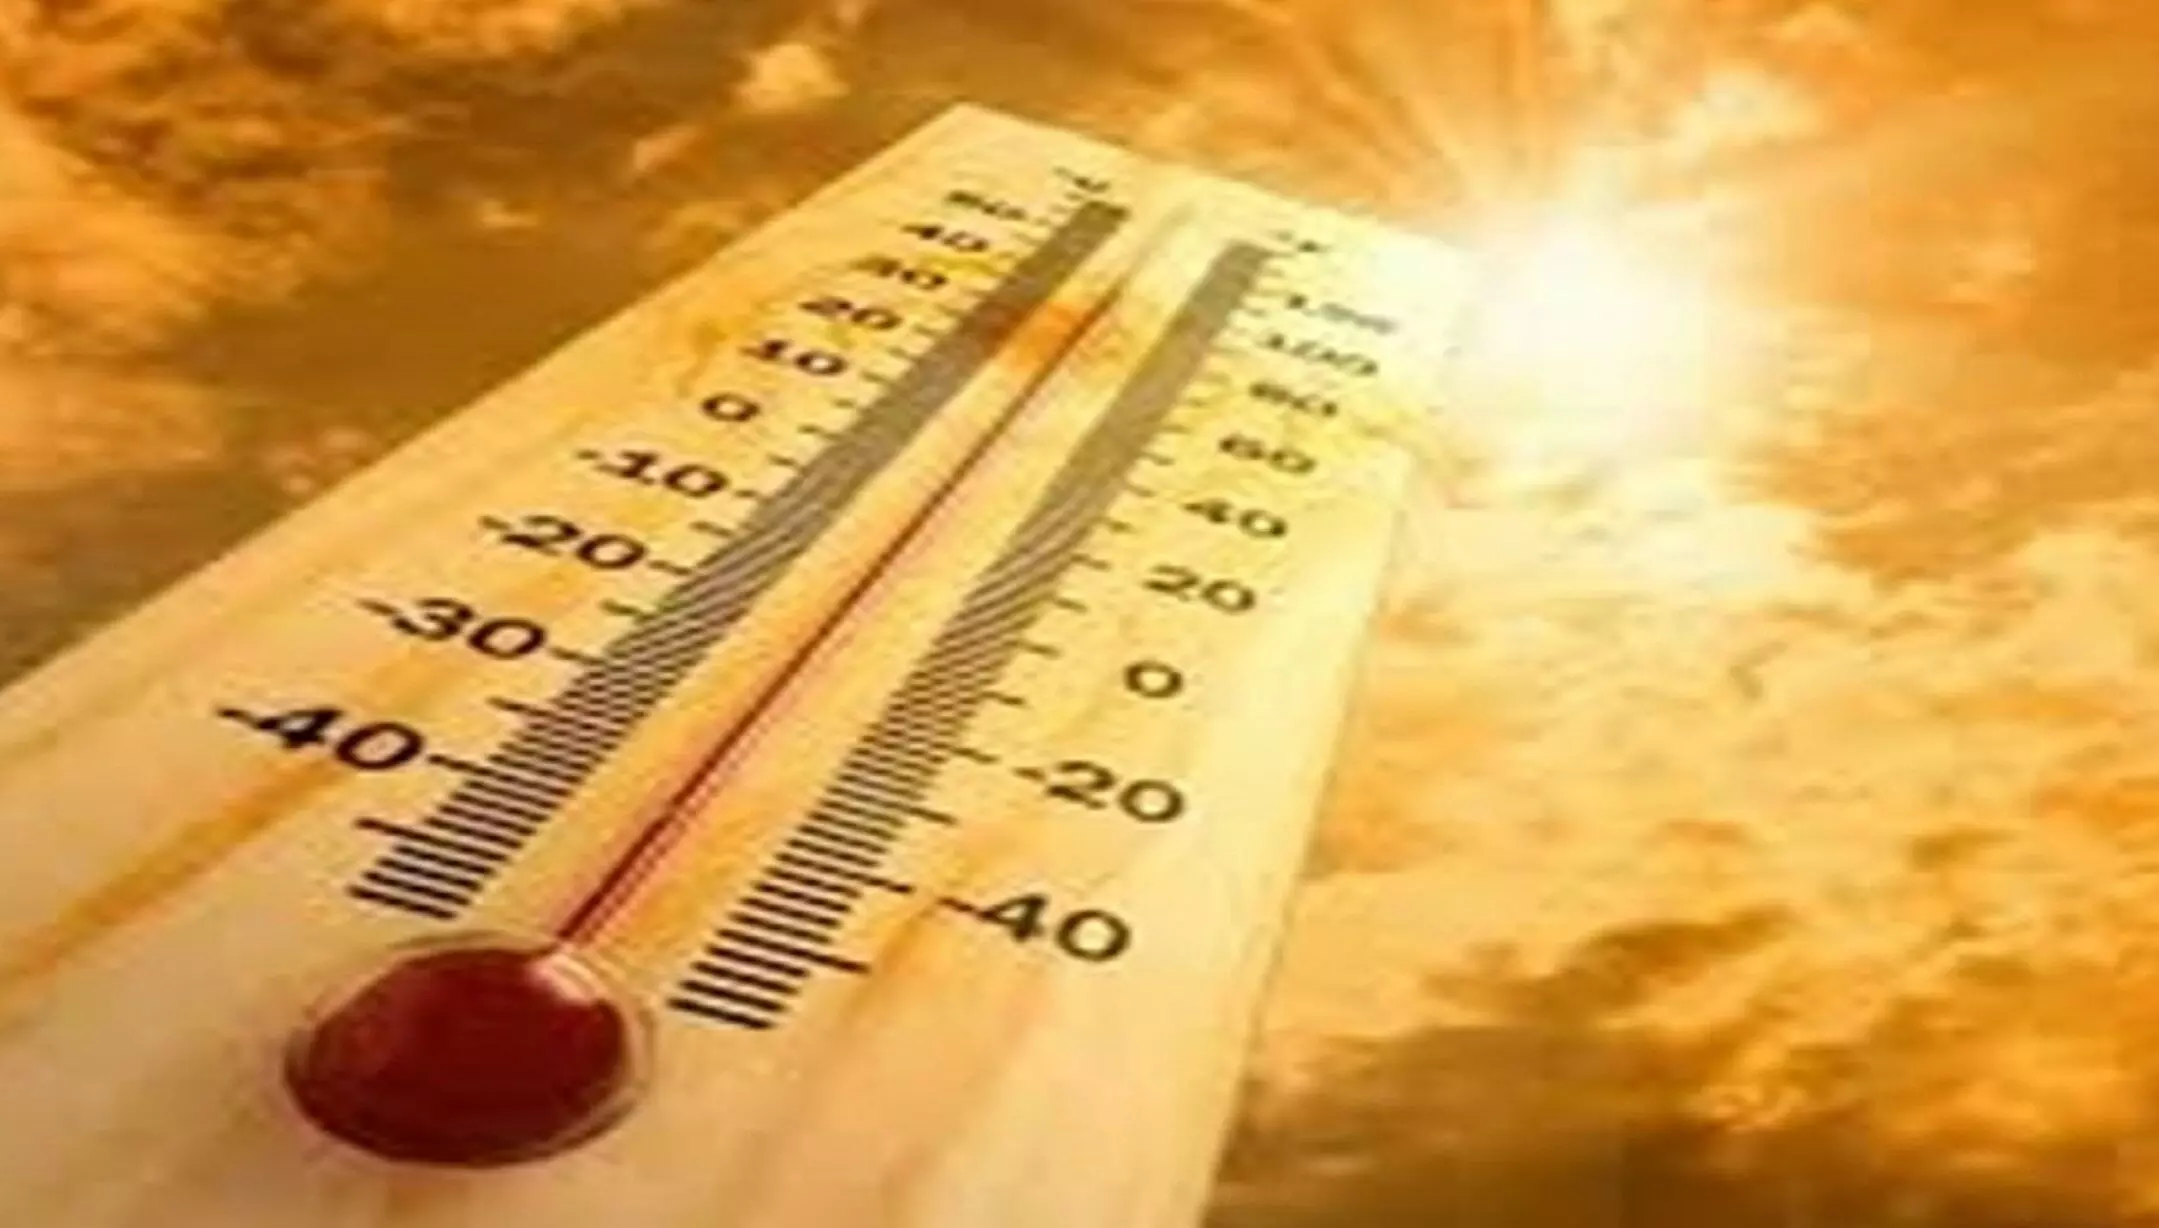 Haryana Heat Wave: हरियाणा में गर्मी ने दिखाए अपने तेवर, अस्पतालों में लगी लंबी कतारें; सड़कों पर पसरा सन्नाटा